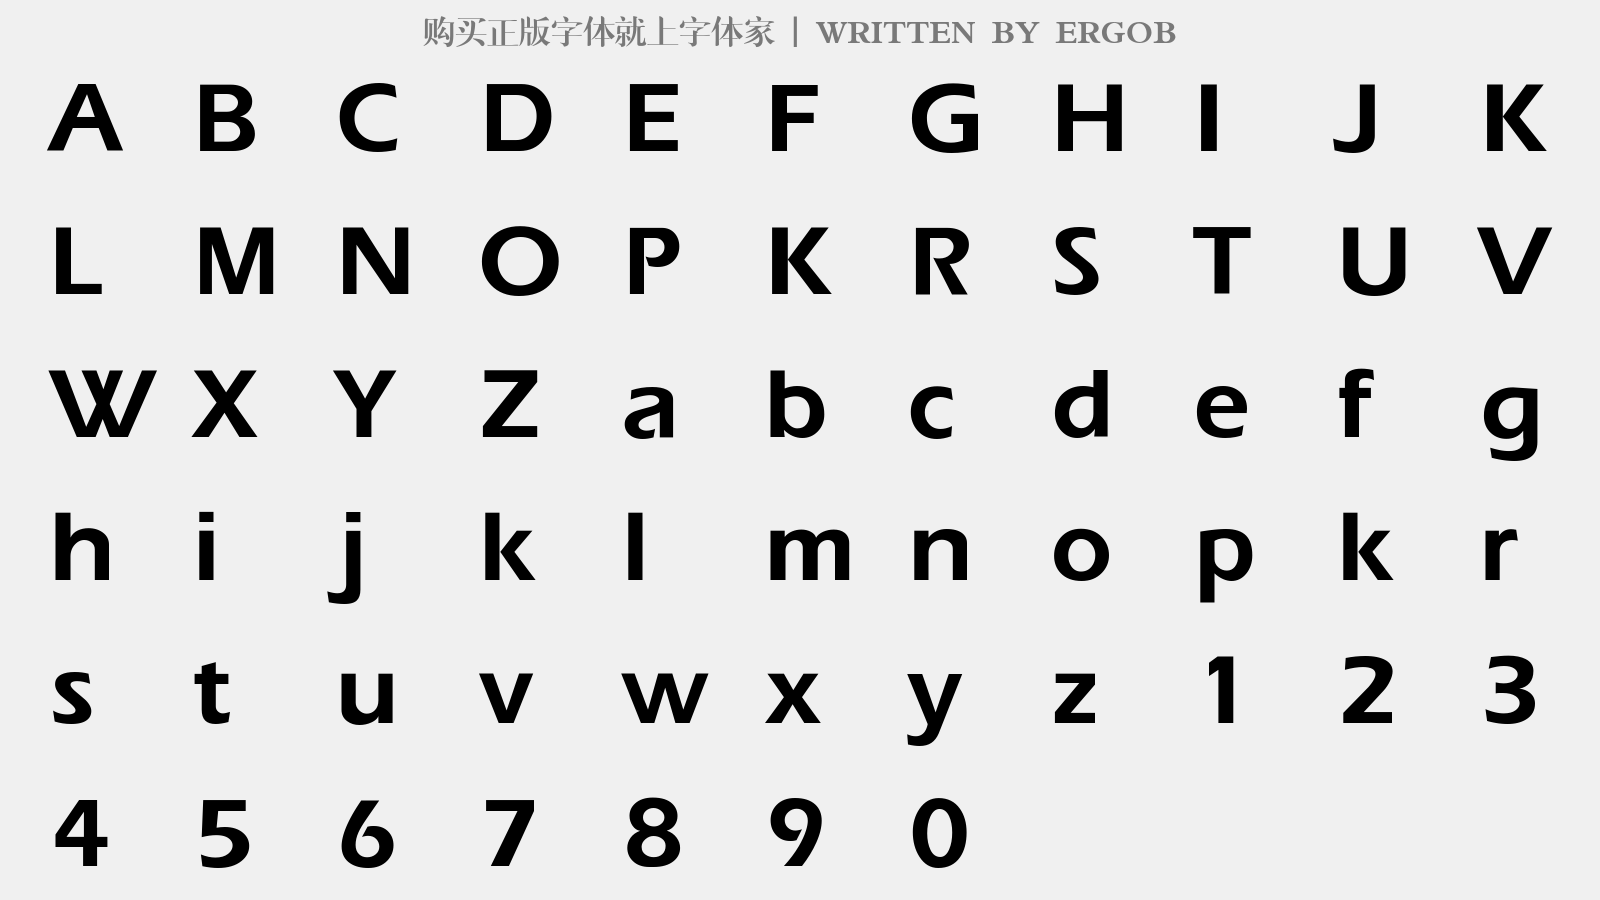 ERGOB - 大写字母/小写字母/数字